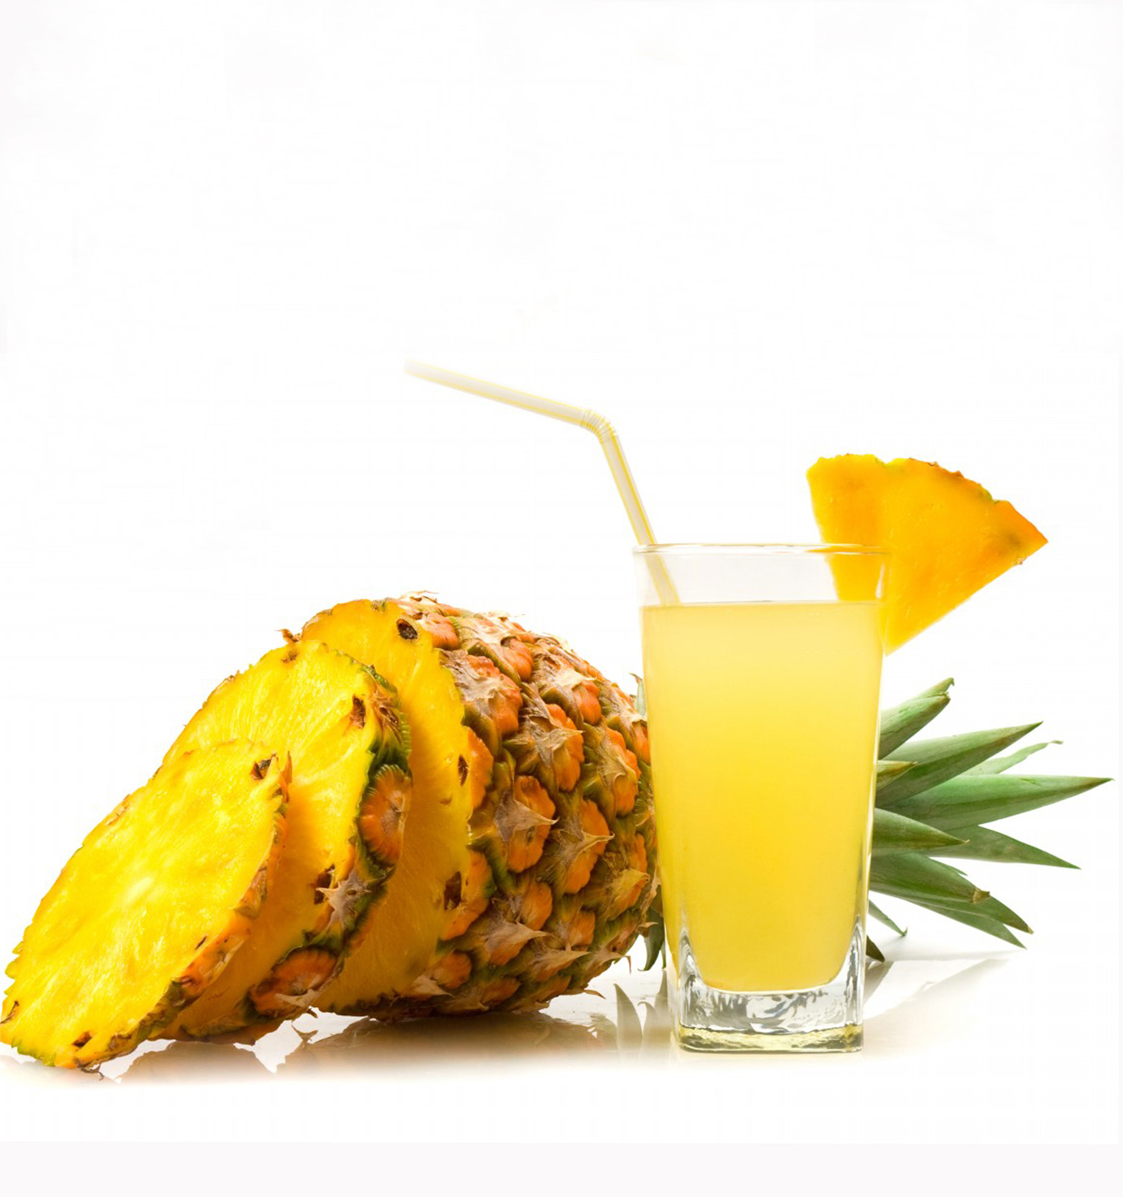 Pineapple-juice